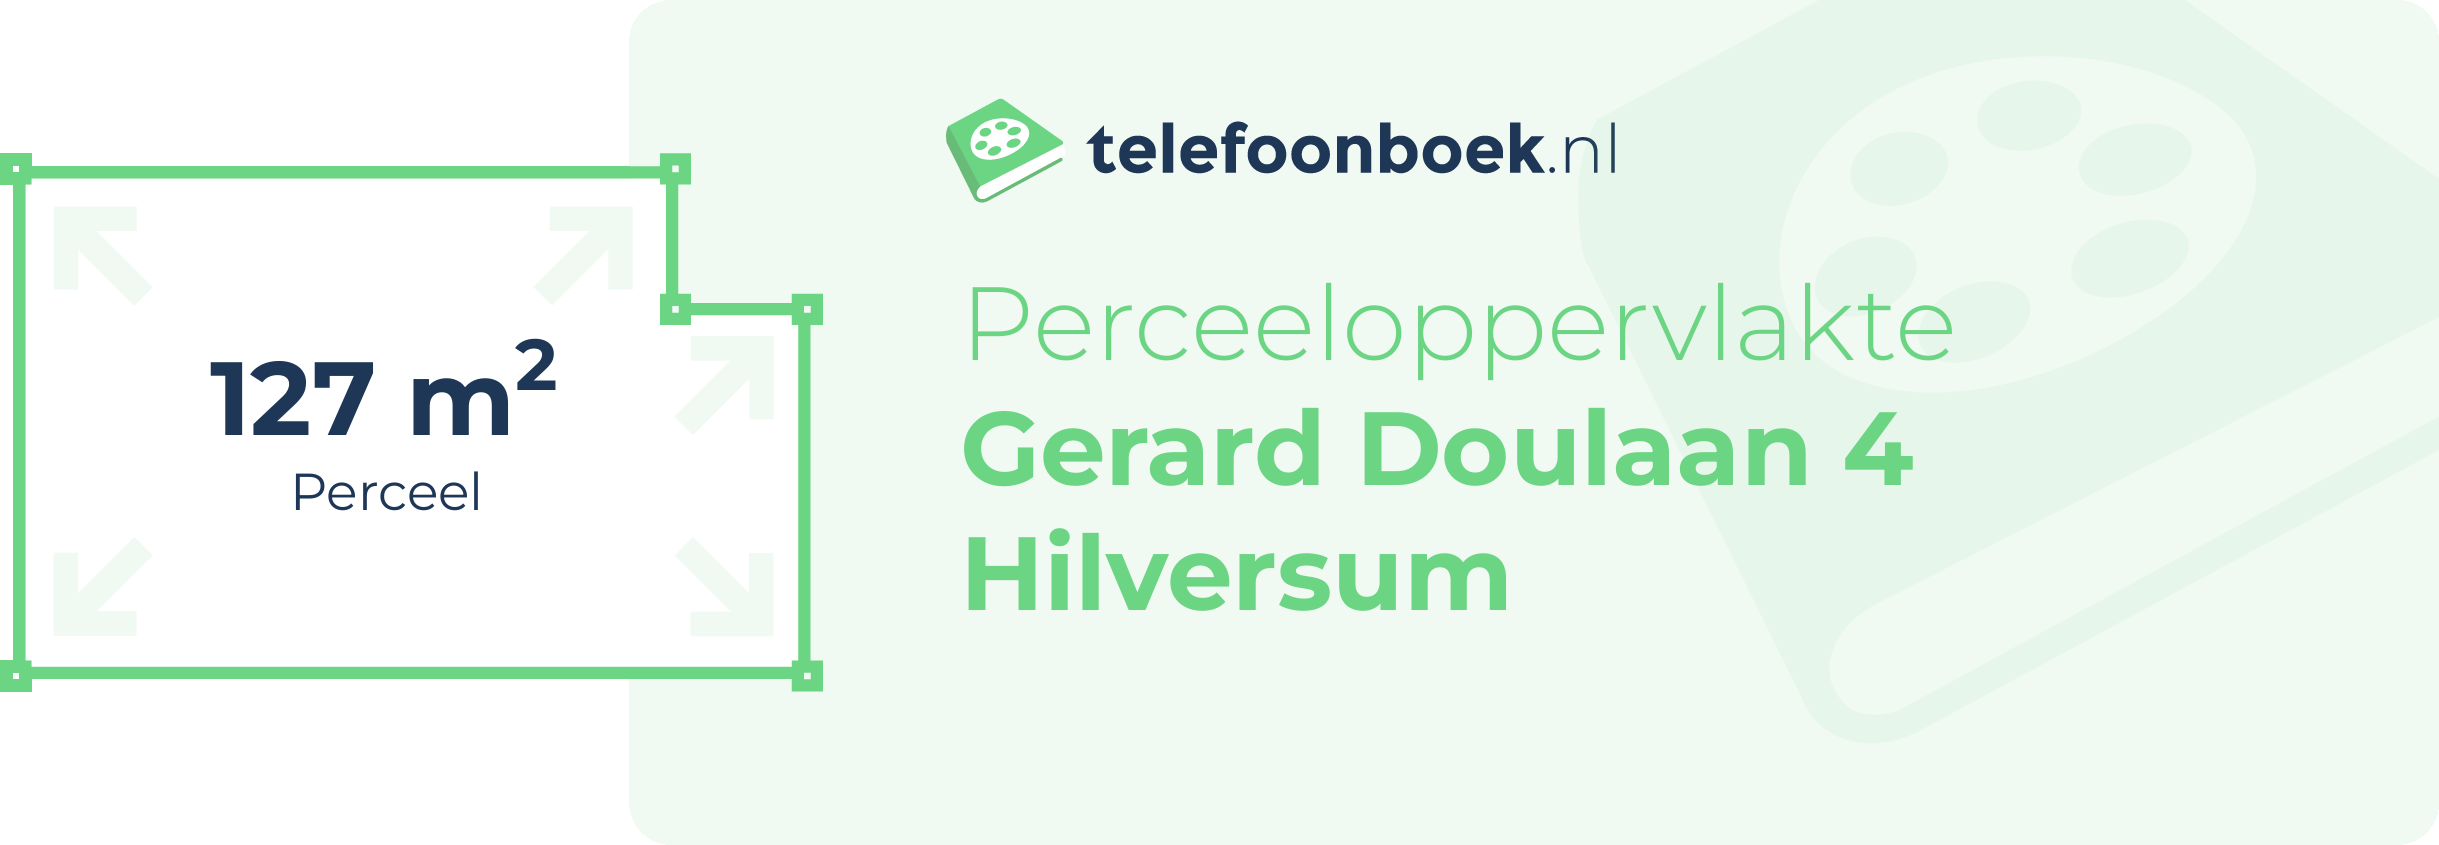 Perceeloppervlakte Gerard Doulaan 4 Hilversum